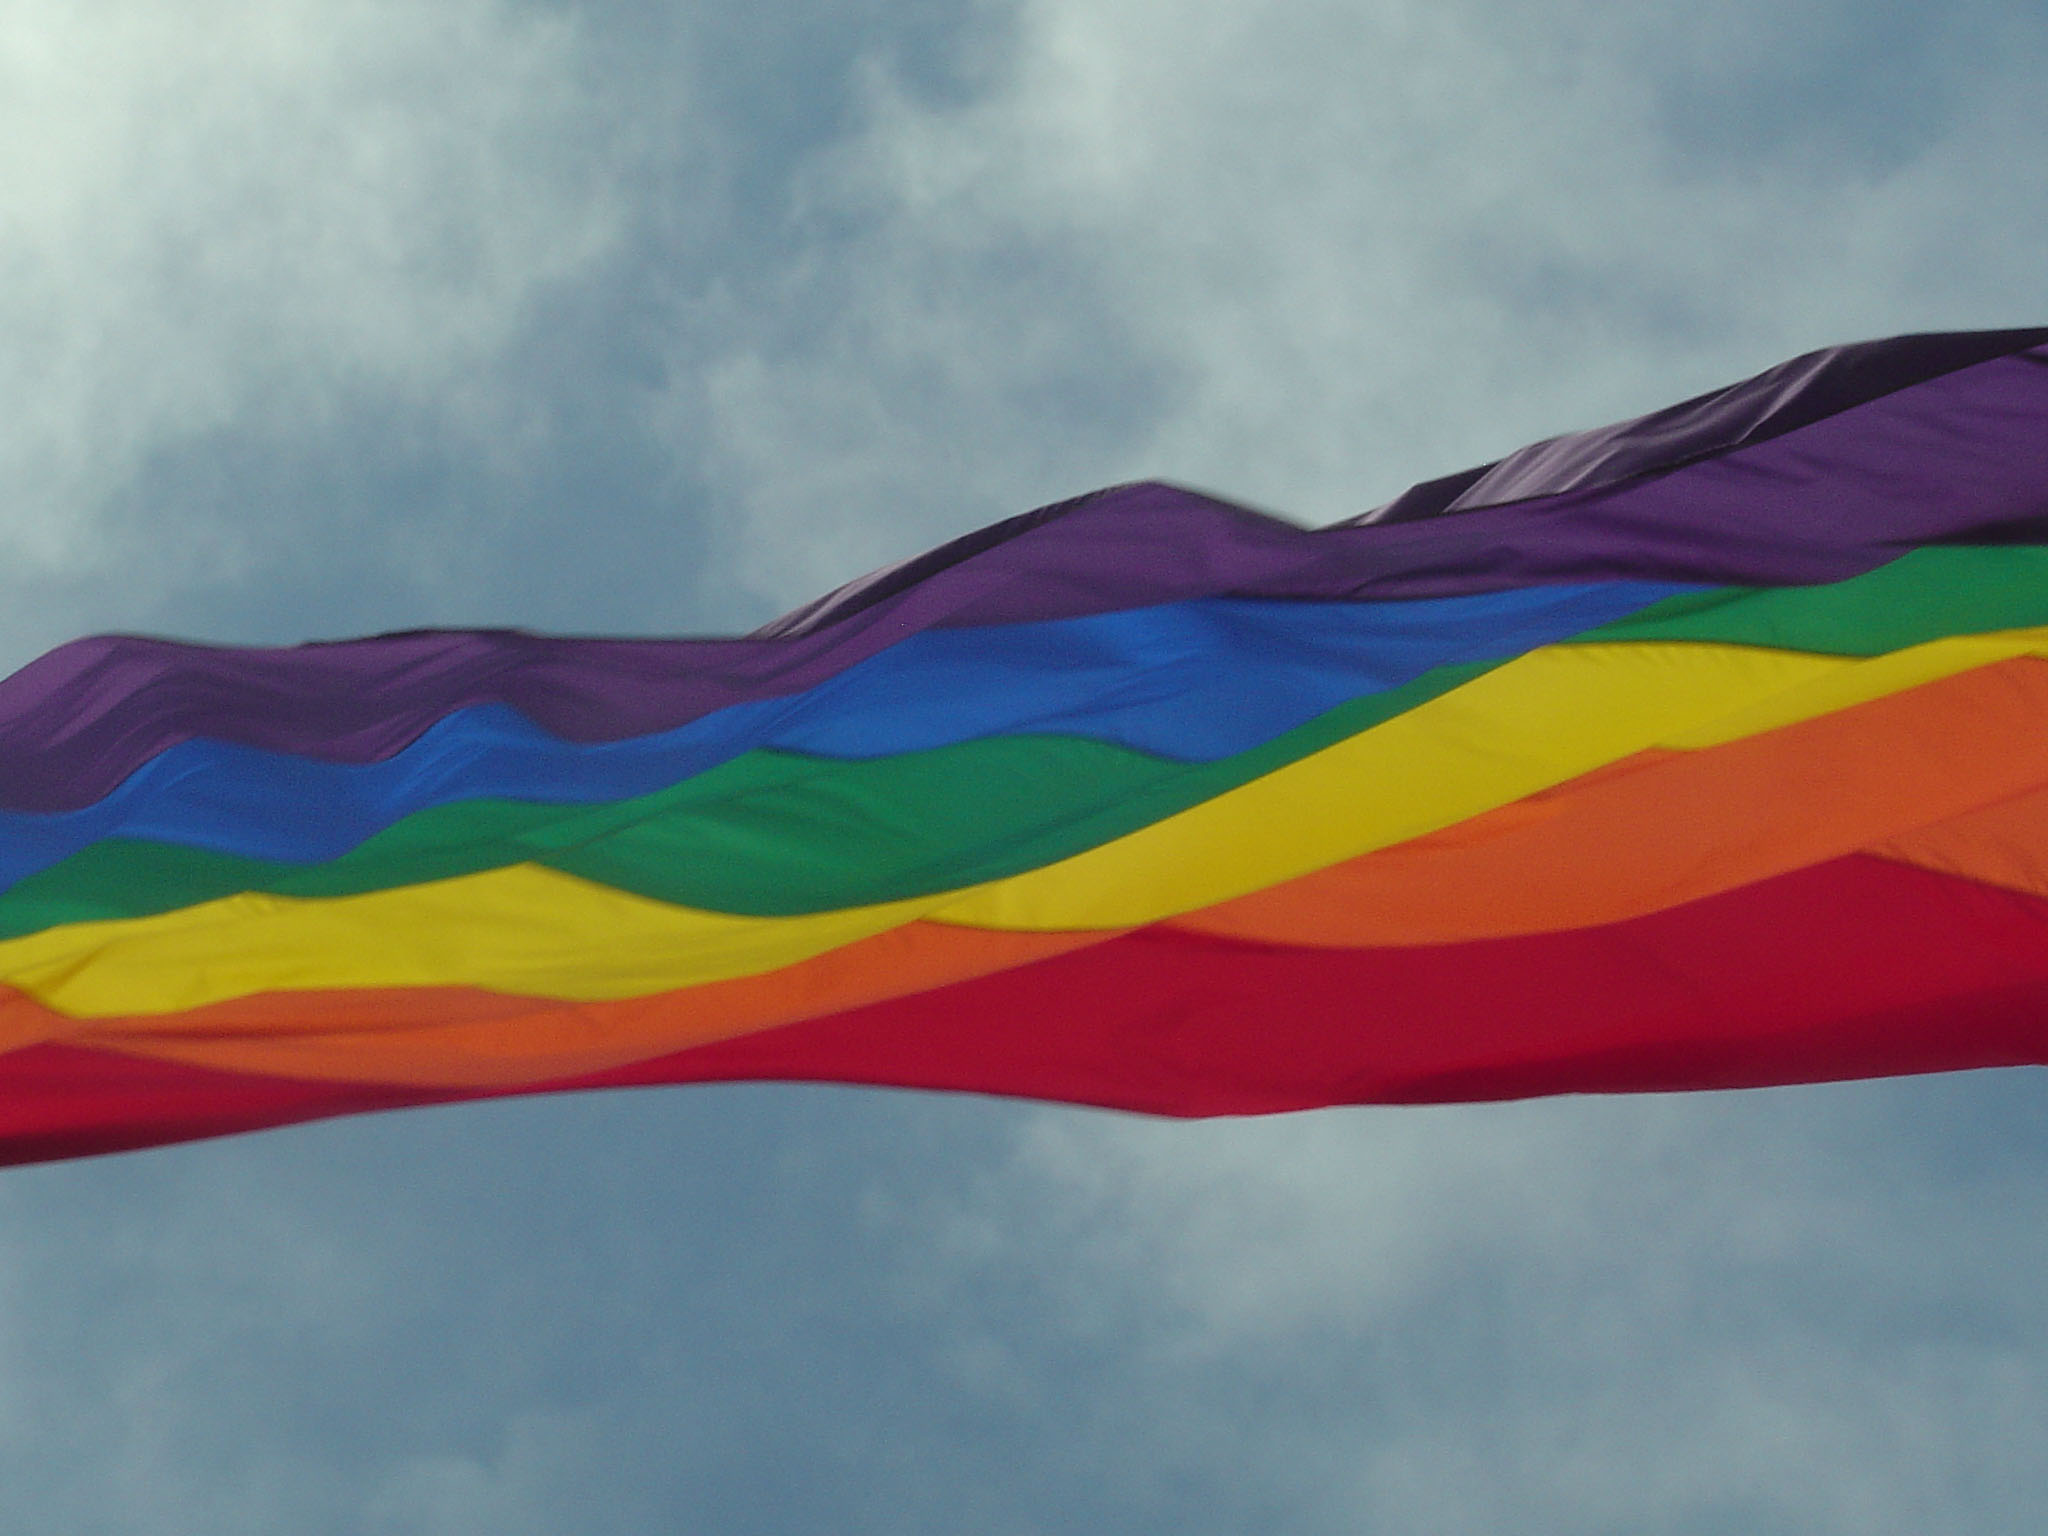 Над портом реяли разноцветные флаги. Флаг радуги. Разноцветный флаг.